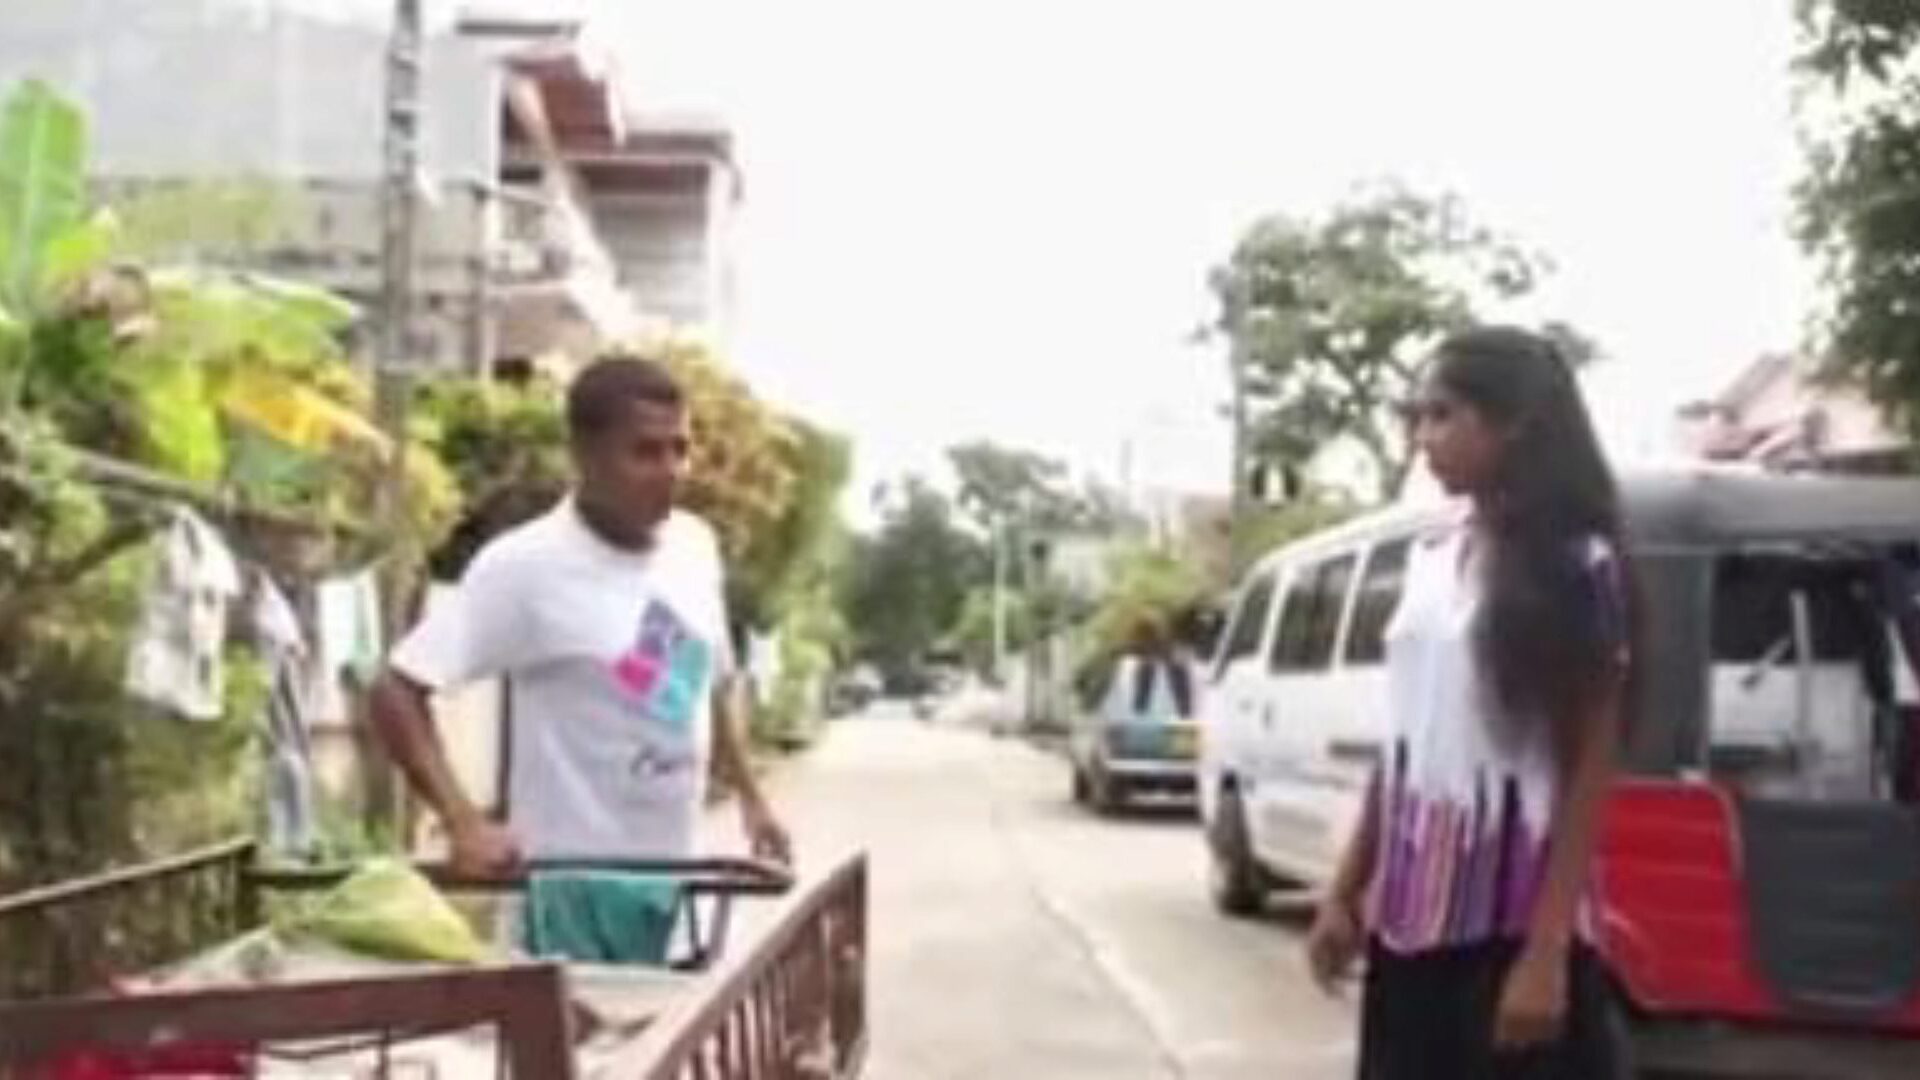 kama rasa: video porno sri lankan și sărut 93 - xhamster urmărește scena filmului orgie cu tuburi kama rasa gratuit pentru toți pe xhamster, cu cea mai bună grupă de episoade din episodul porno asiatic sri lankan, kissing & dirty talk